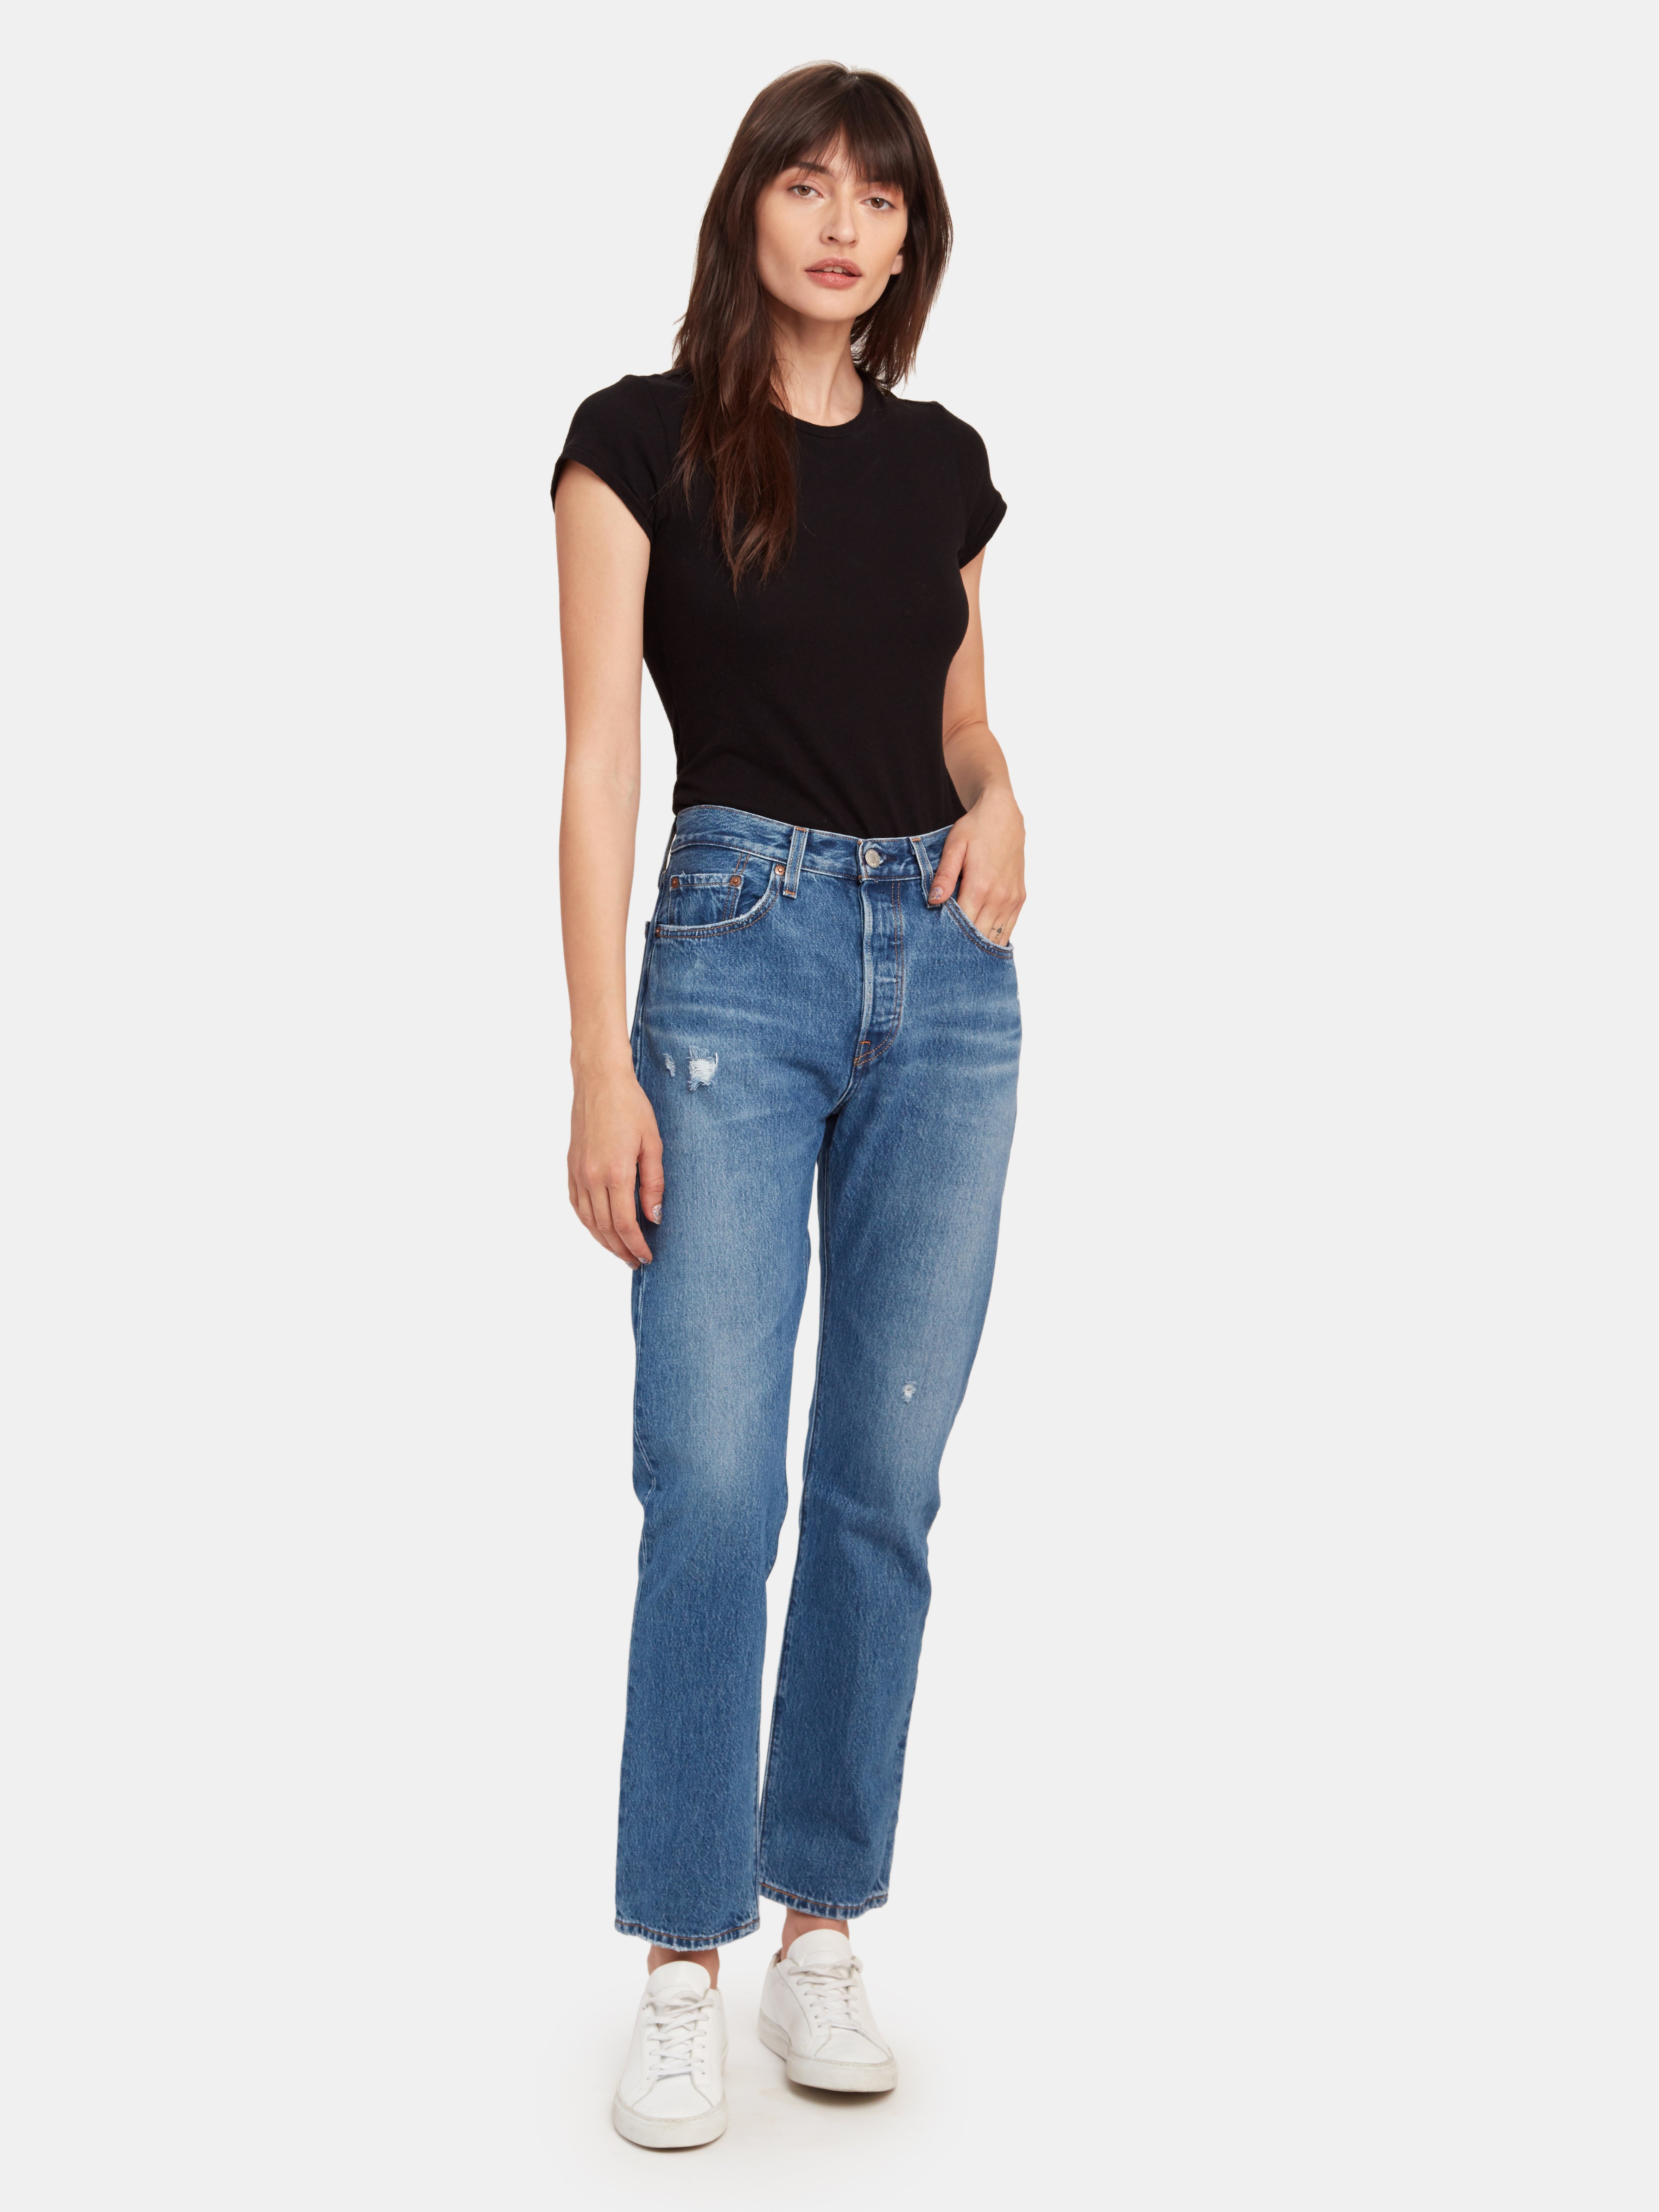 jeans 501 original fit